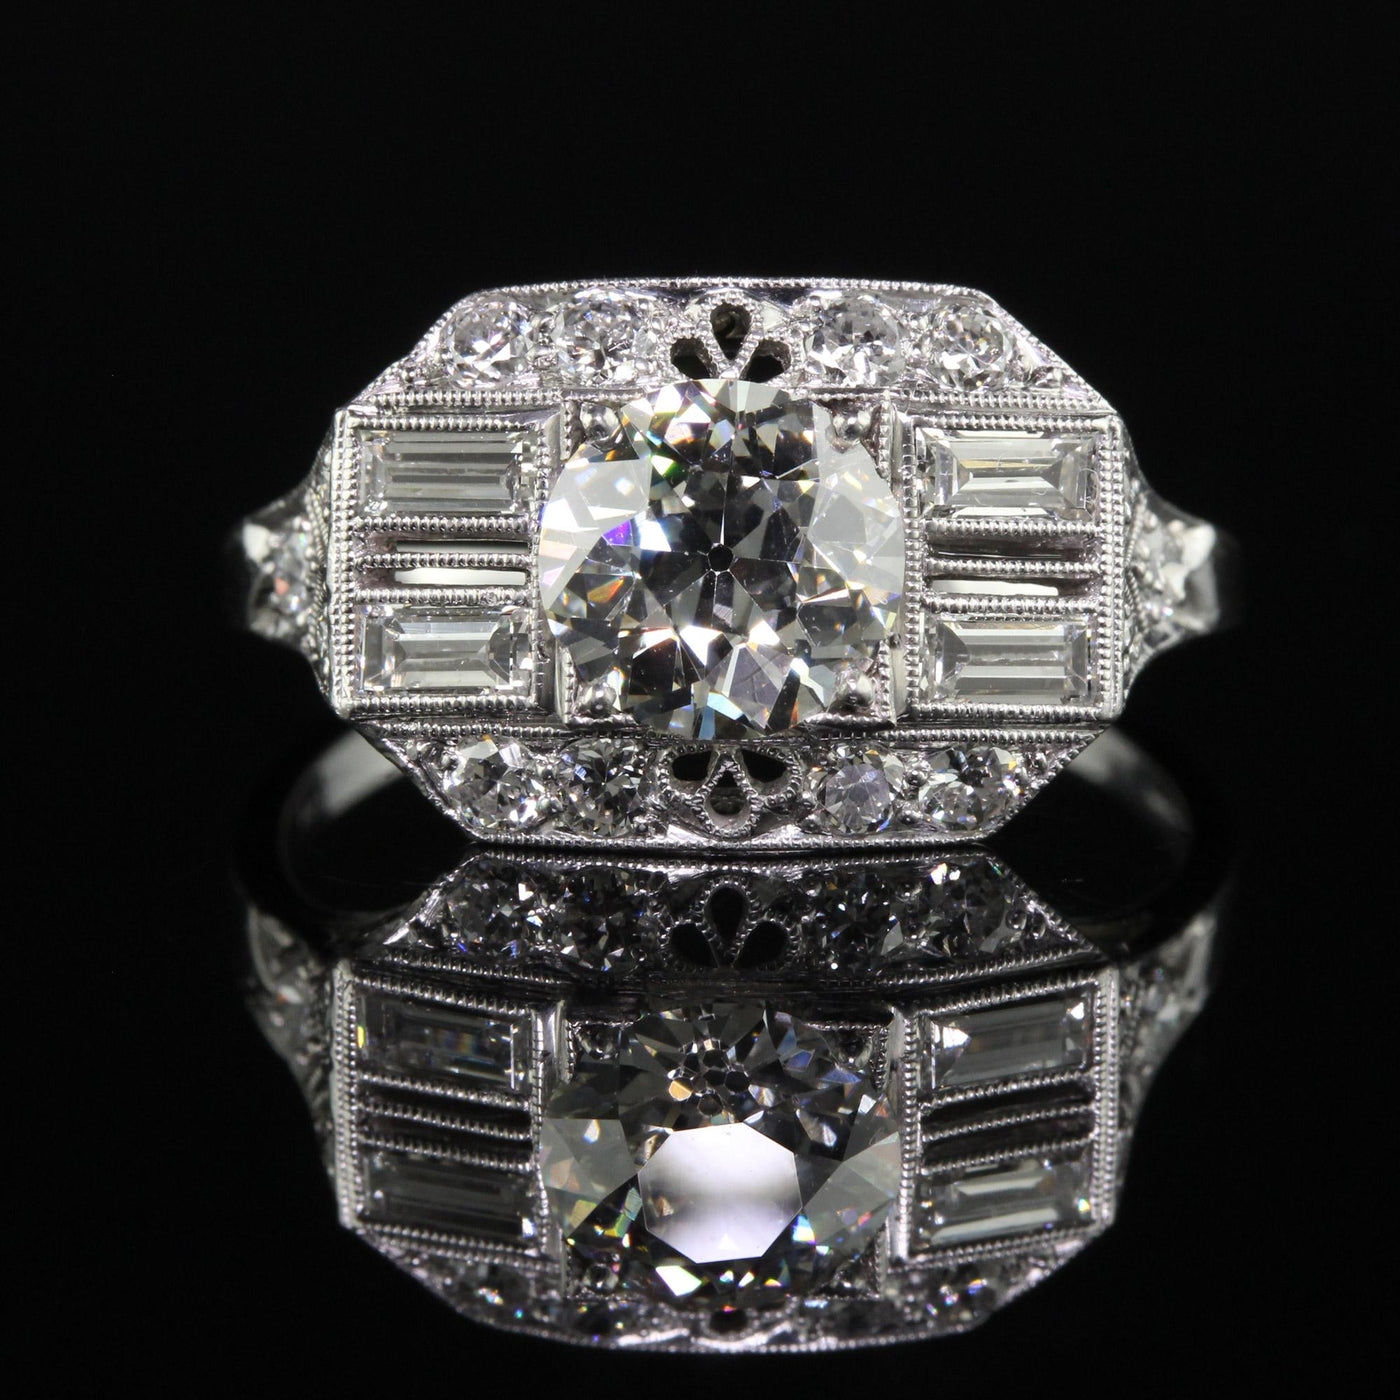 Antique Art Deco Platinum Old European Diamond Filigree Engagement Ring - GIA